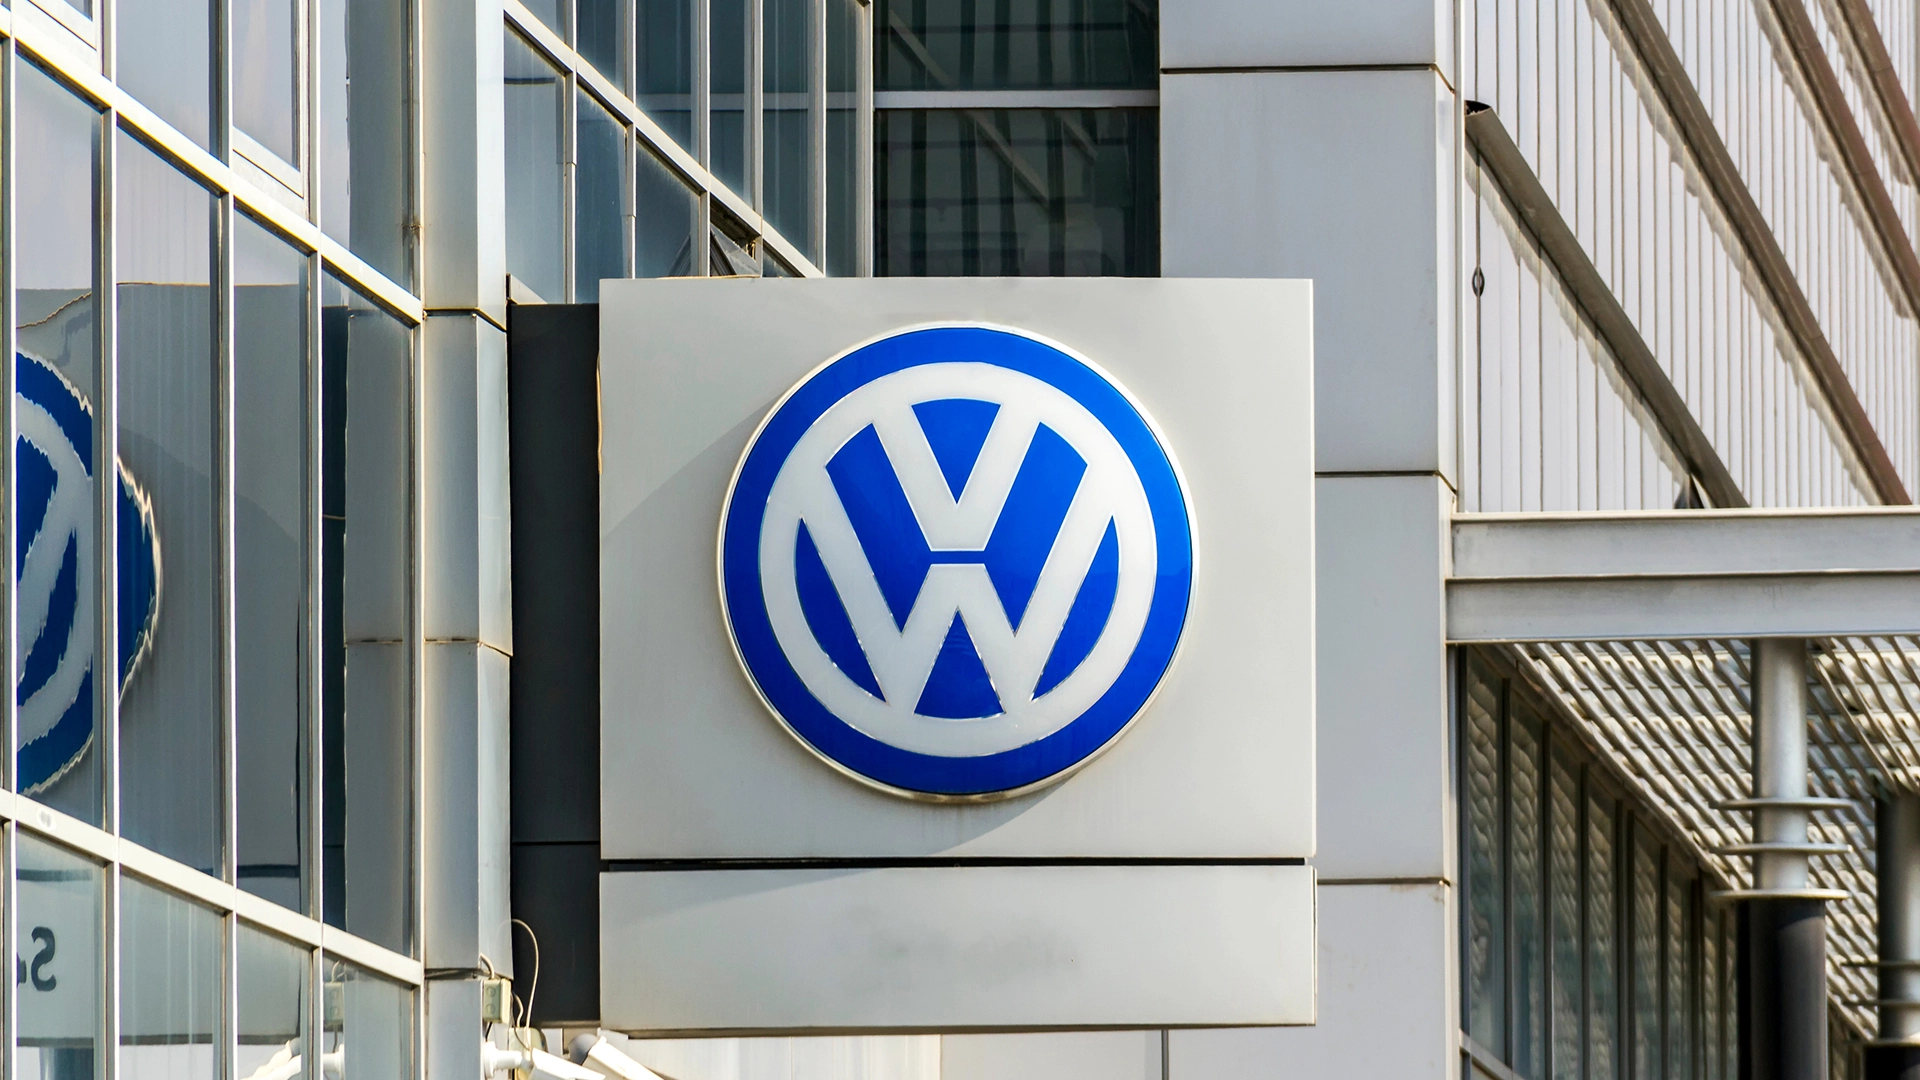 Mehr als 20% Upside bei Volkswagen&#8209;Aktie: Sollten Anleger kaufen &#8209; oder hat die Sache einen Haken? (Foto: multitel/Shutterstock)